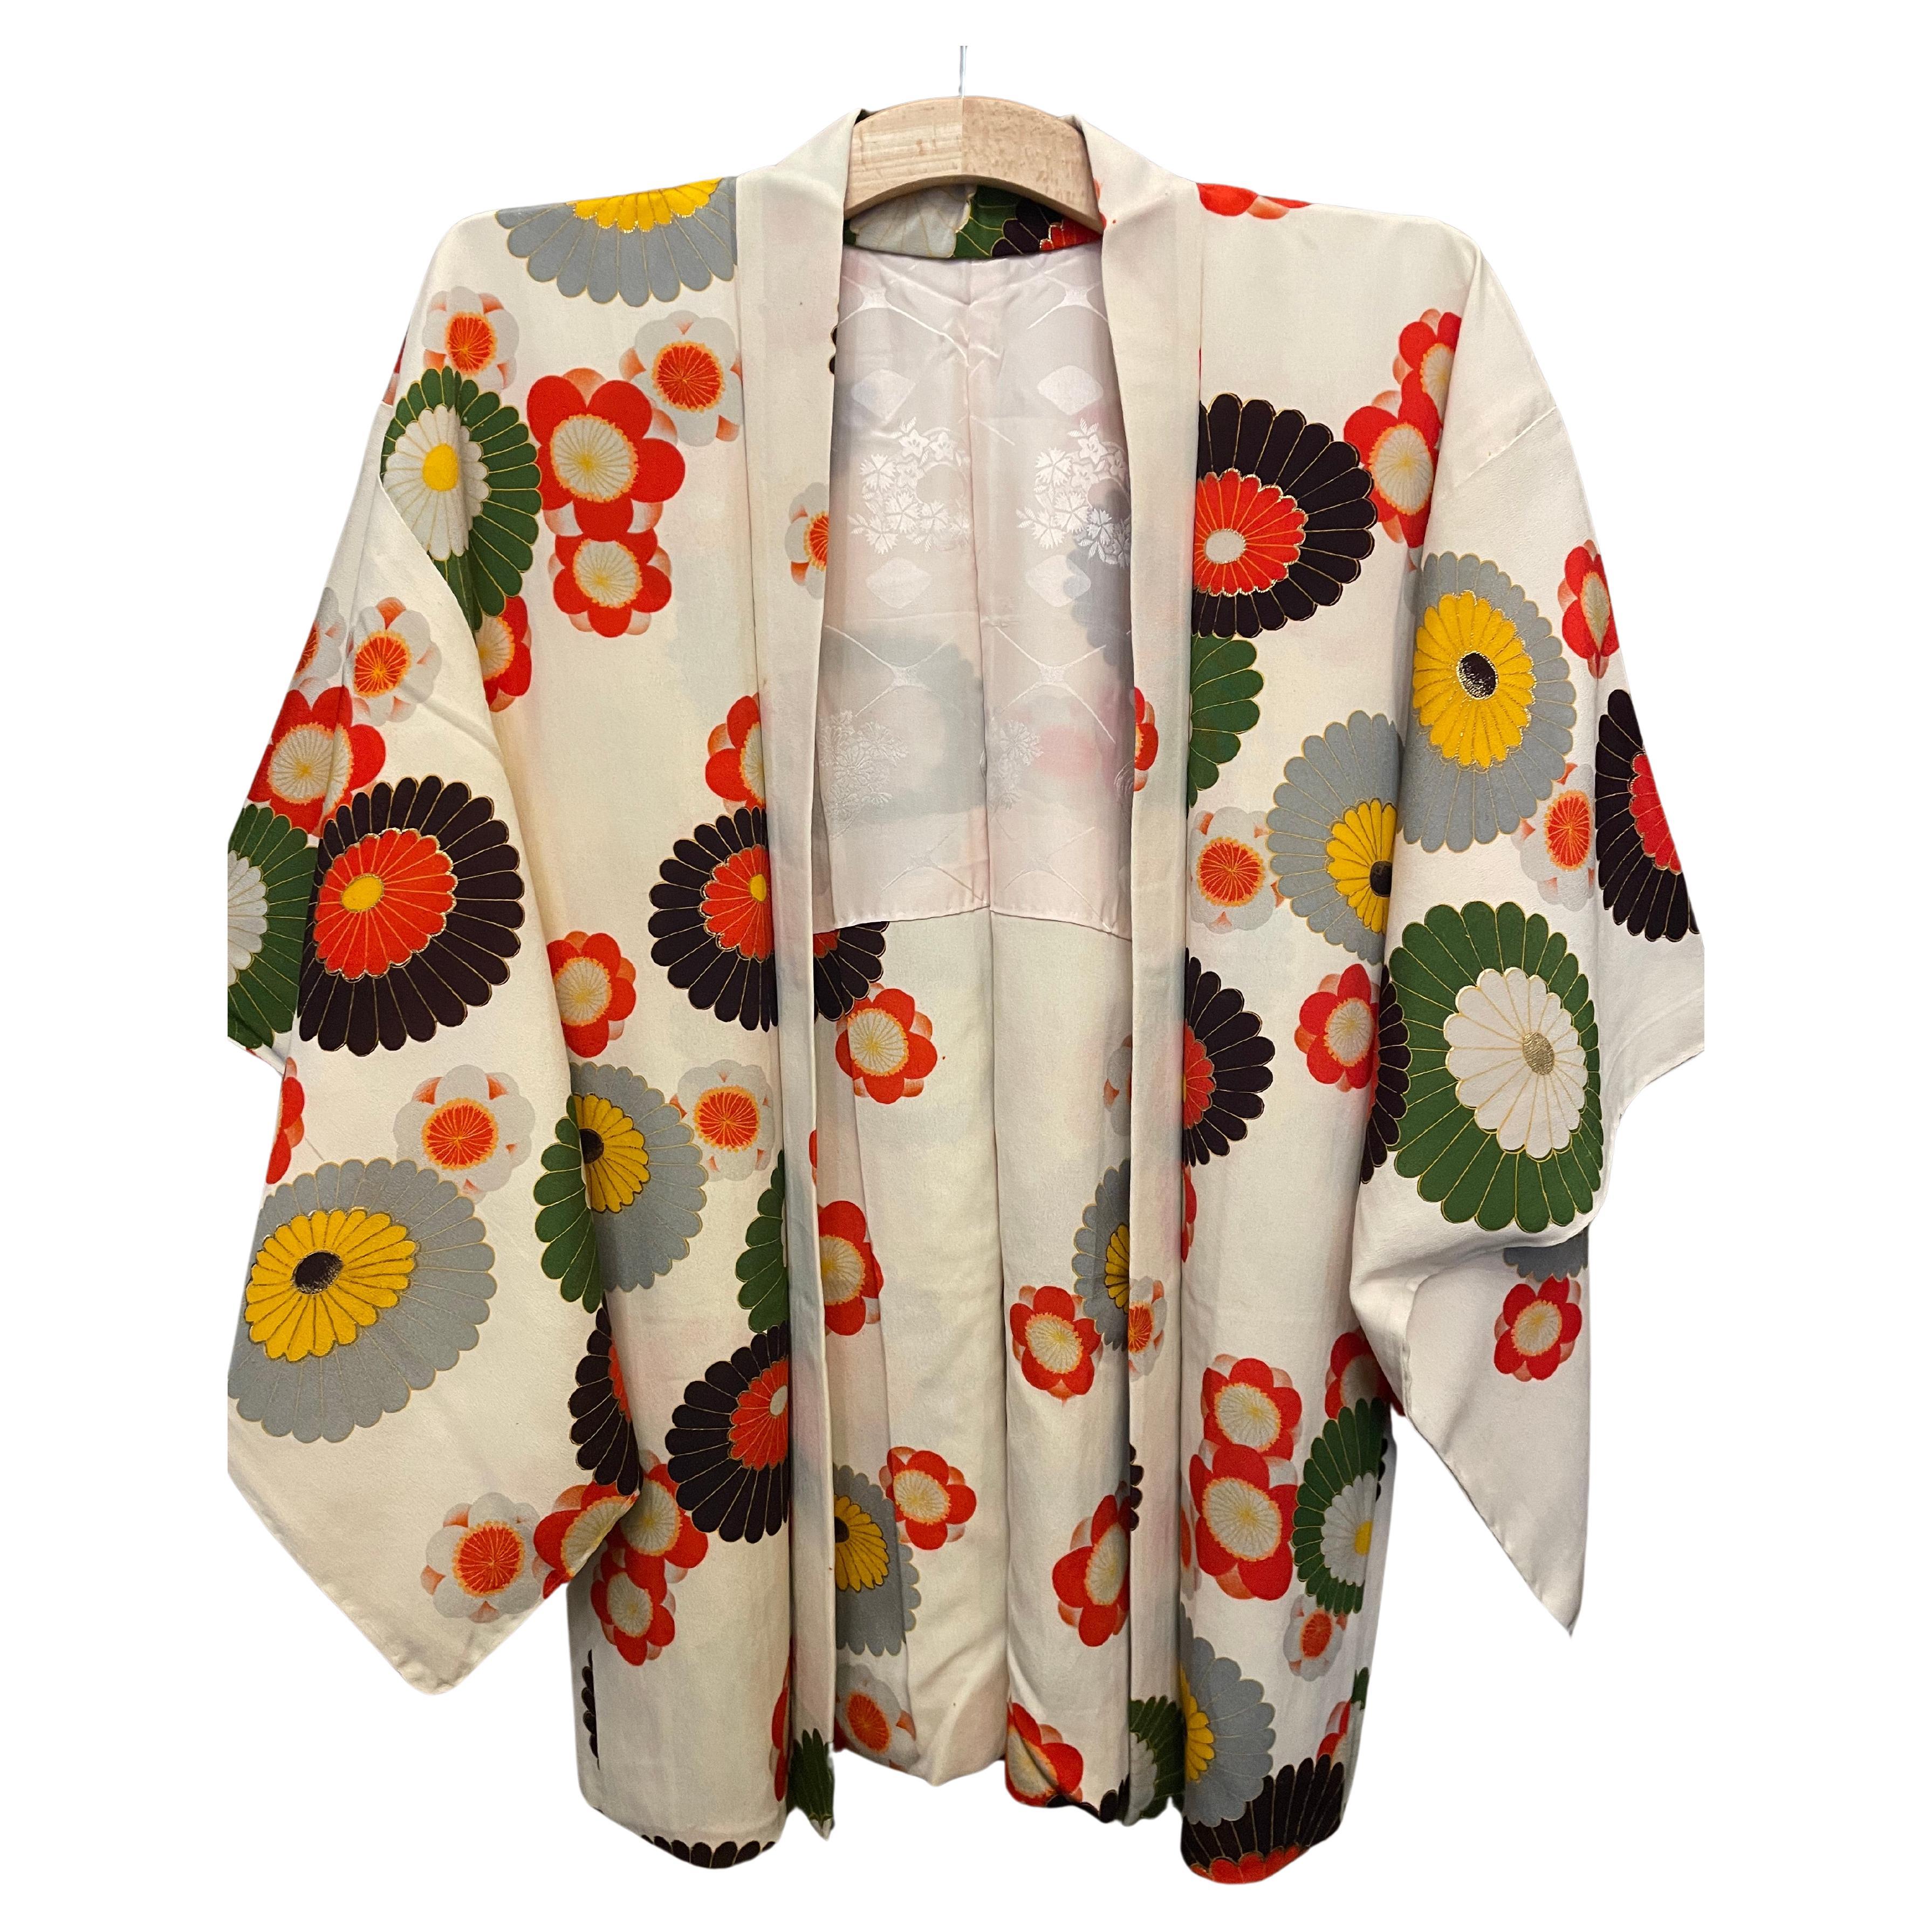 Veste Haori japonaise en soie blanche avec fleurs colorées des années 1980